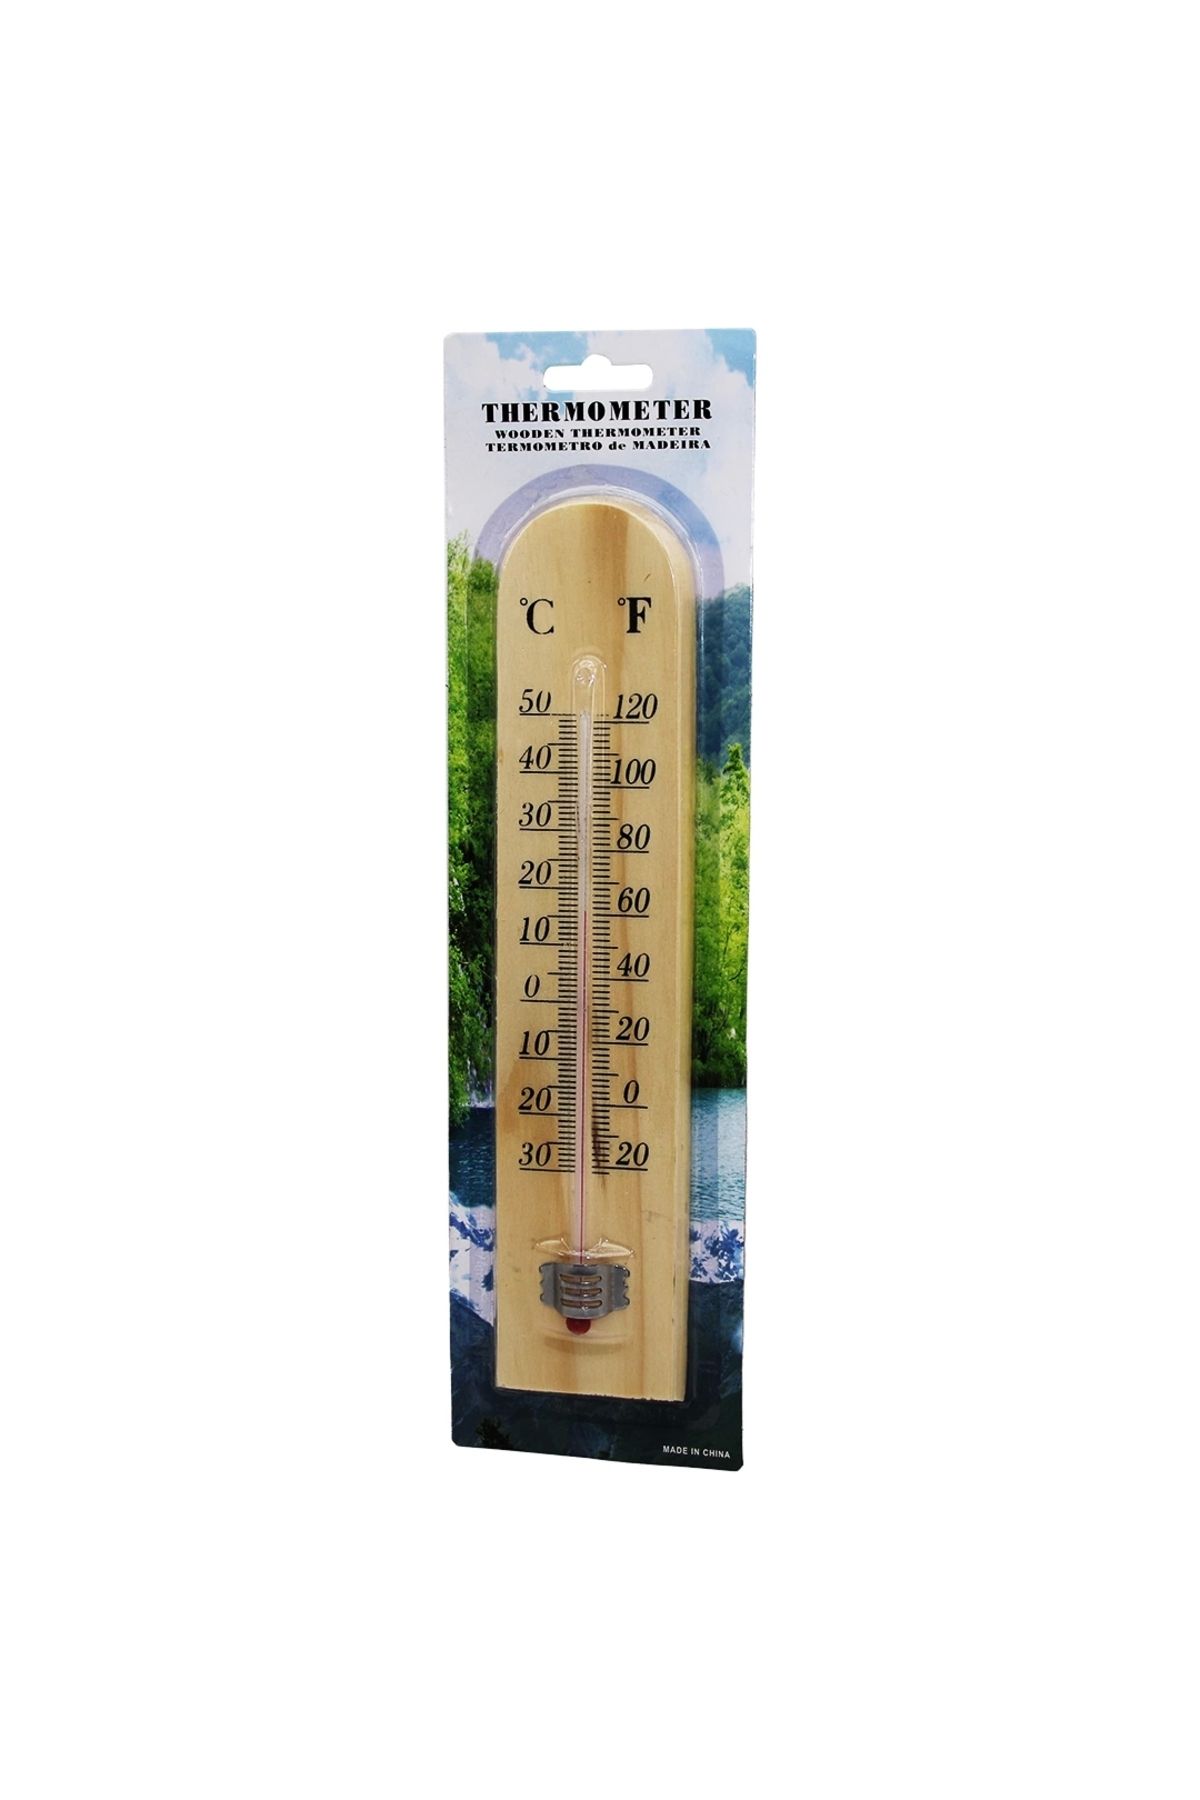 Genel Markalar Ahşap Derece Oda Termometresi (44DEX34)